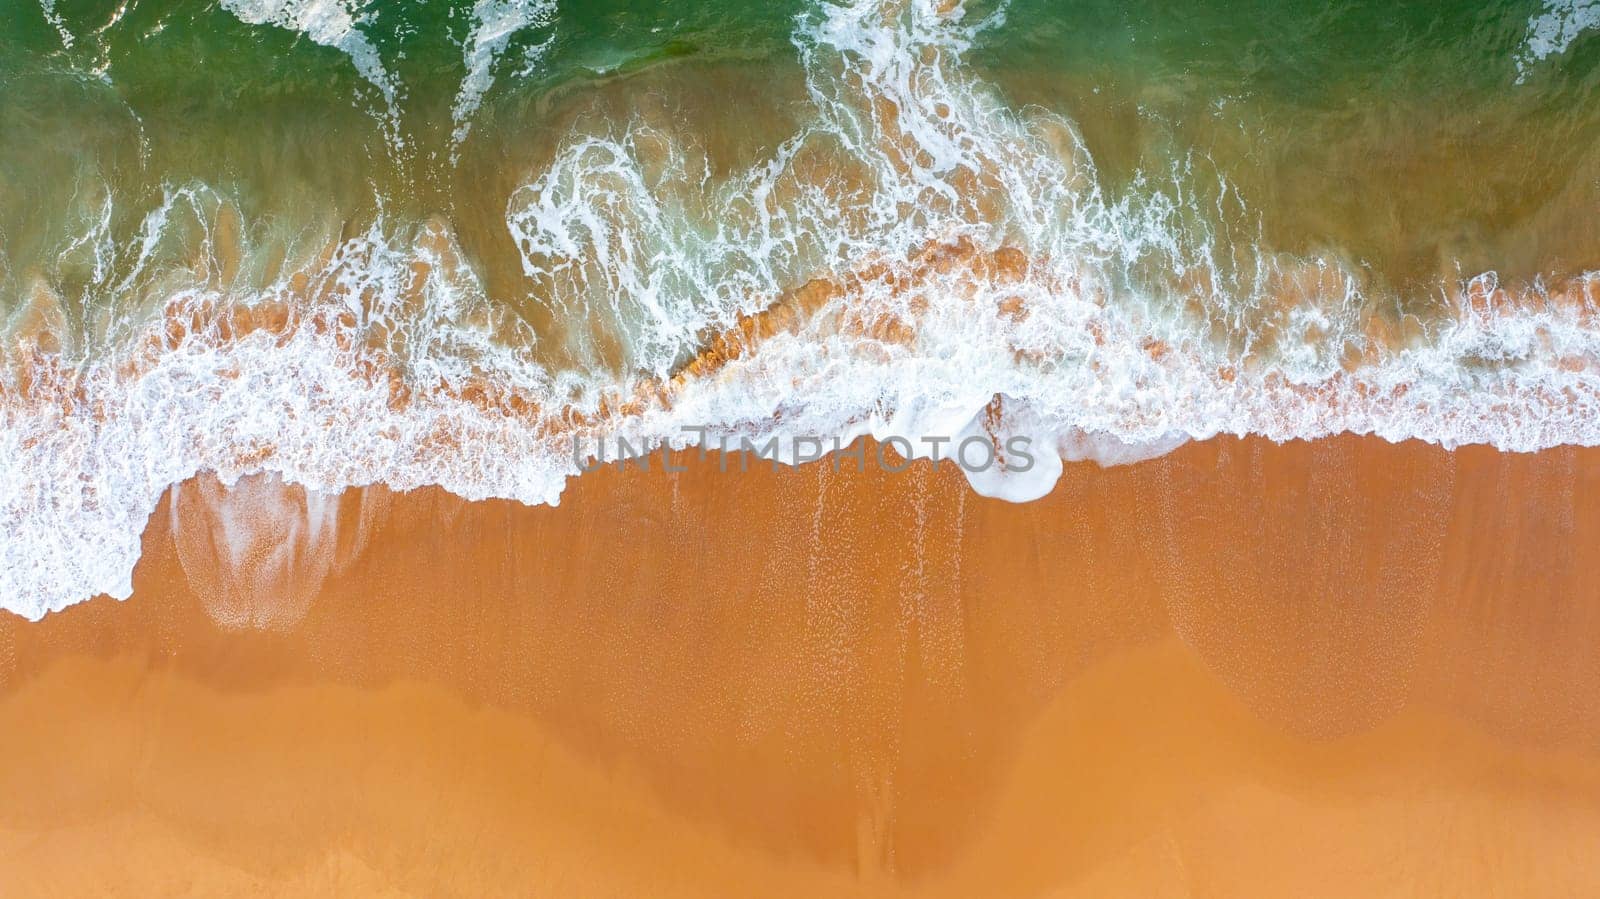 Top view of waves crushing on sandy beach. Atlantic ocean beach aerial view